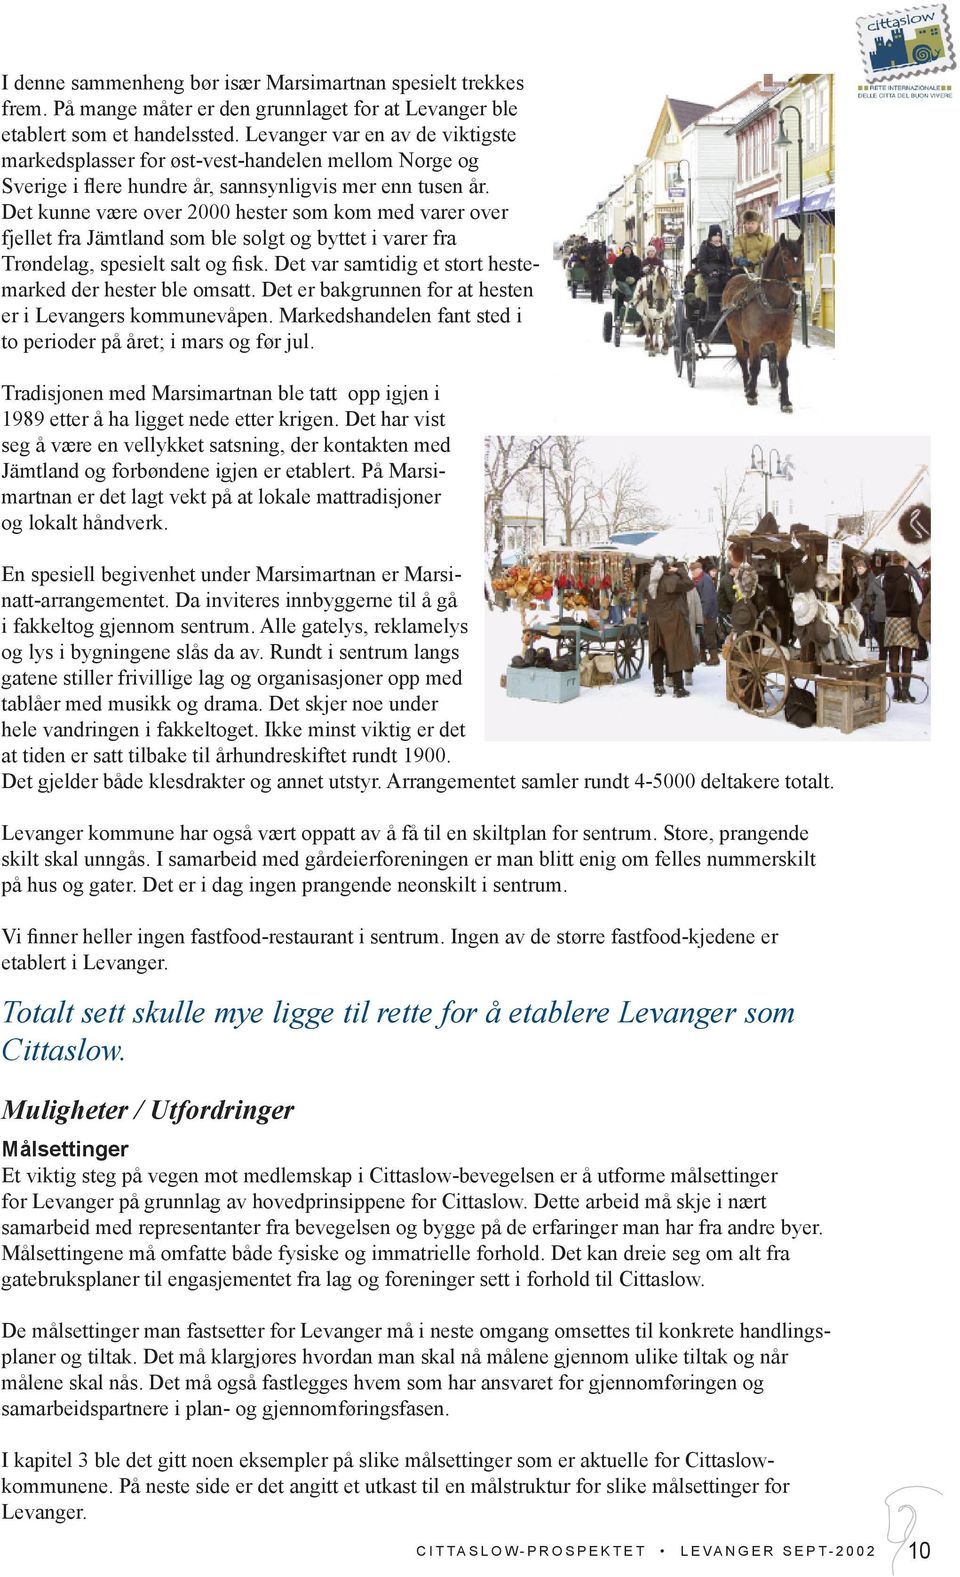 Det kunne være over 2000 hester som kom med varer over fjellet fra Jämtland som ble solgt og byttet i varer fra Trøndelag, spesielt salt og sk.